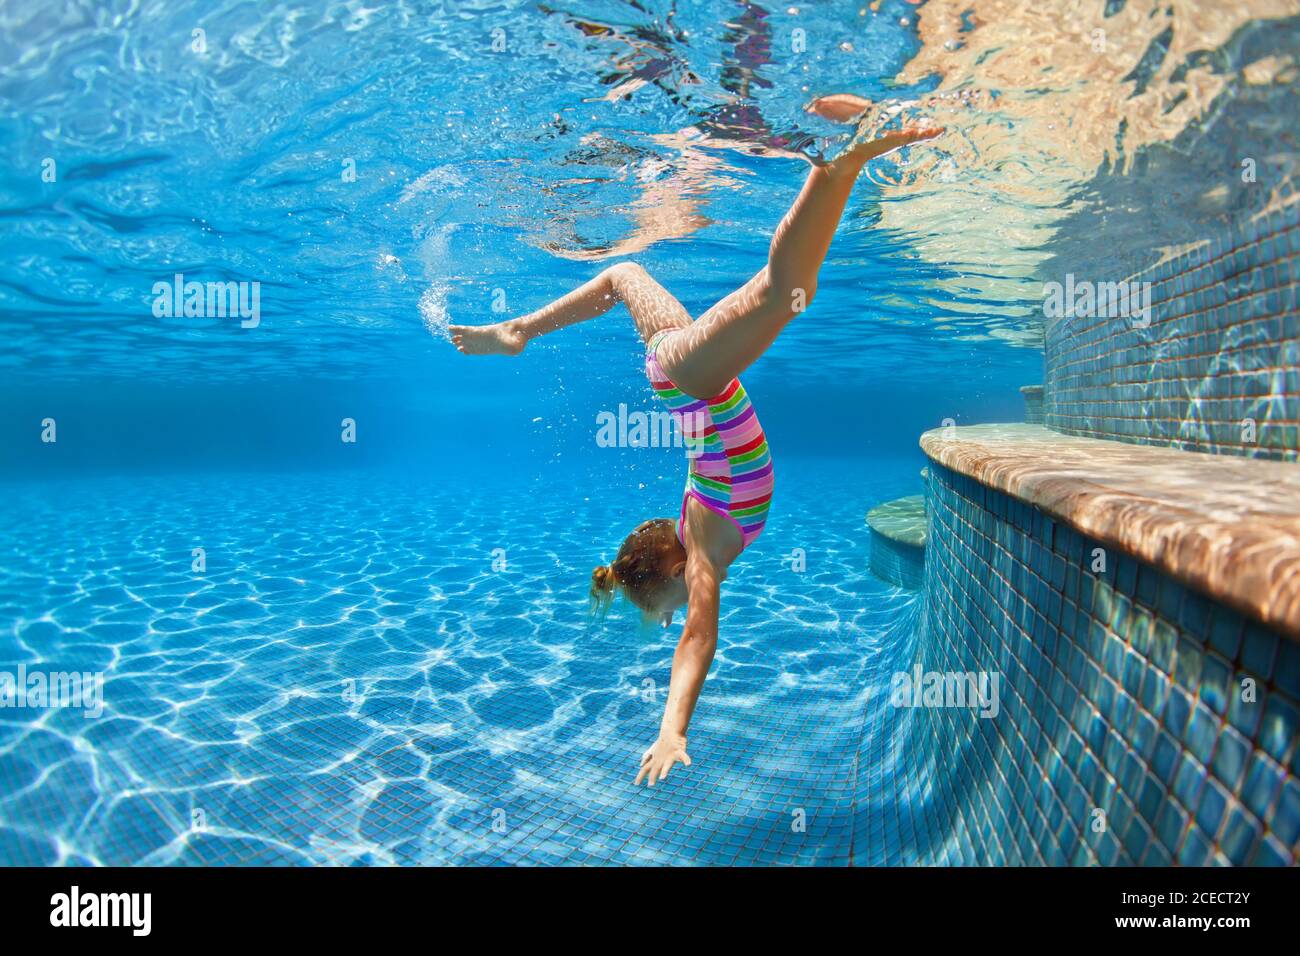 Divertente bambino imparare a nuotare, immersione in piscina blu con divertimento - saltare in profondità sotto il mare con spruzzi. Stile di vita familiare sano, attività per bambini Foto Stock